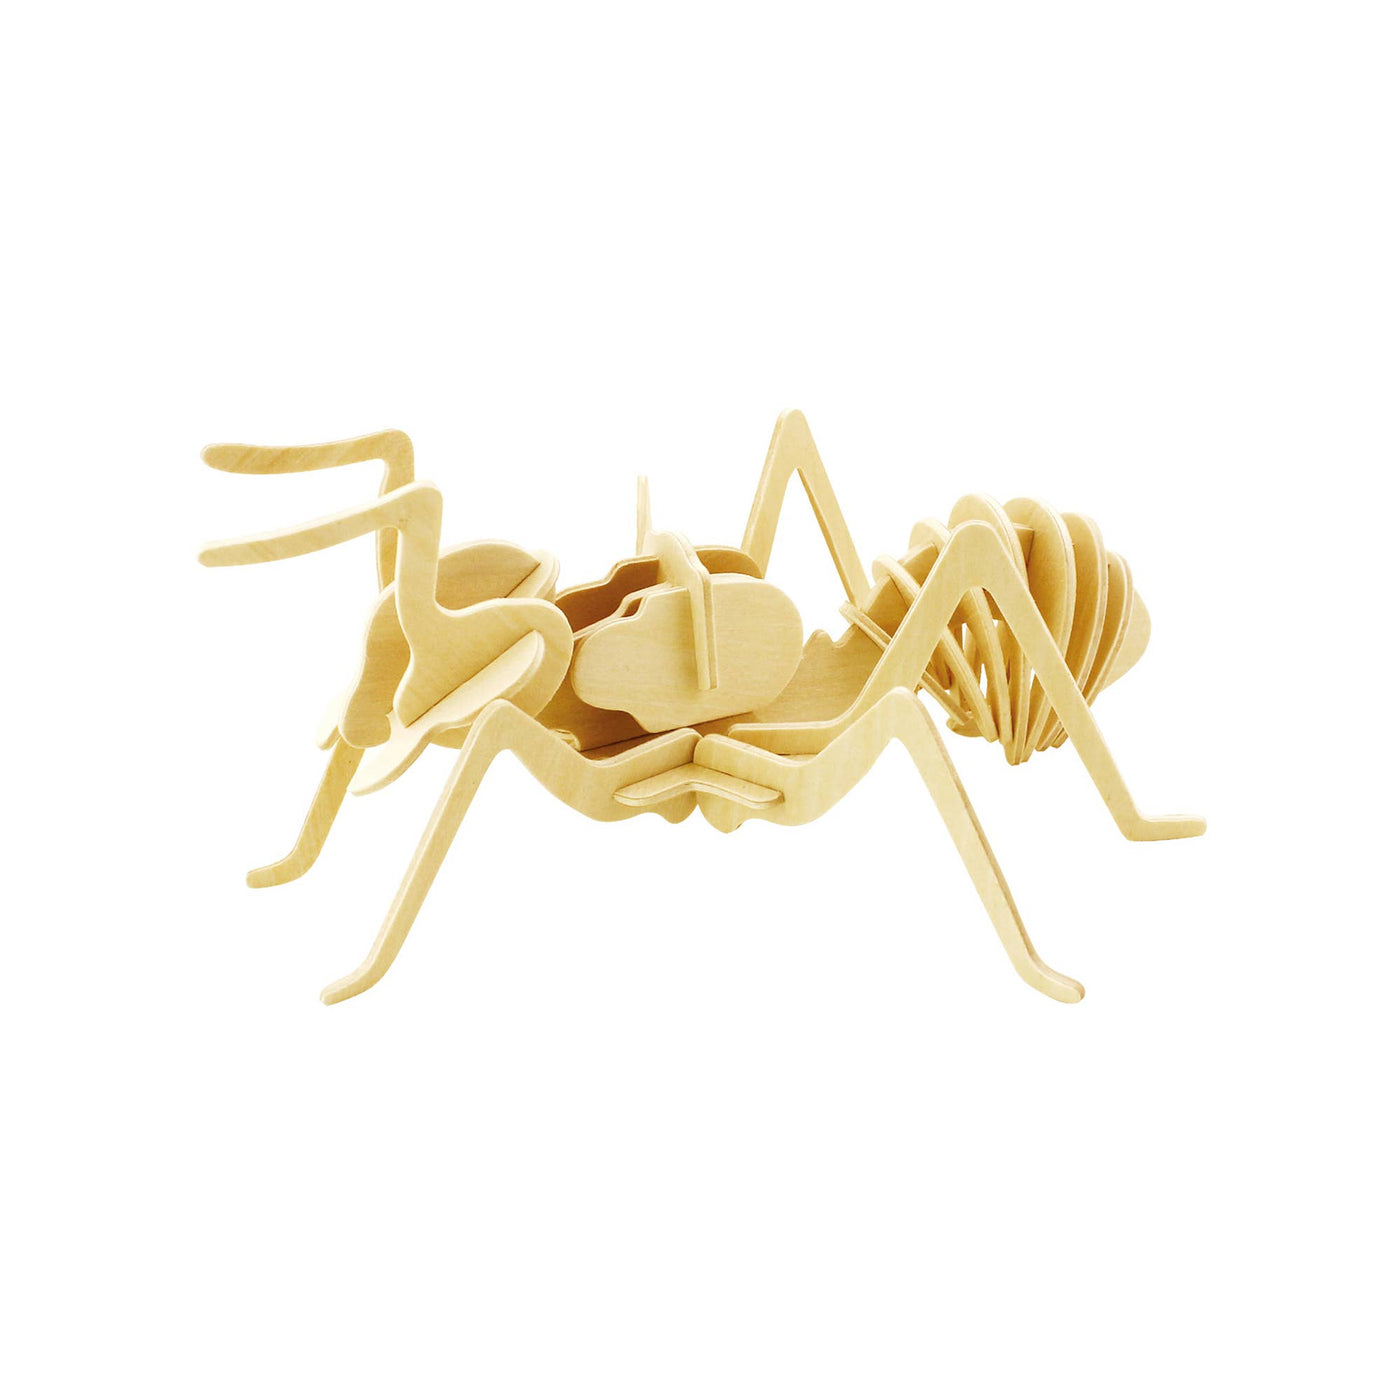 Ant: 3D Wooden Puzzle